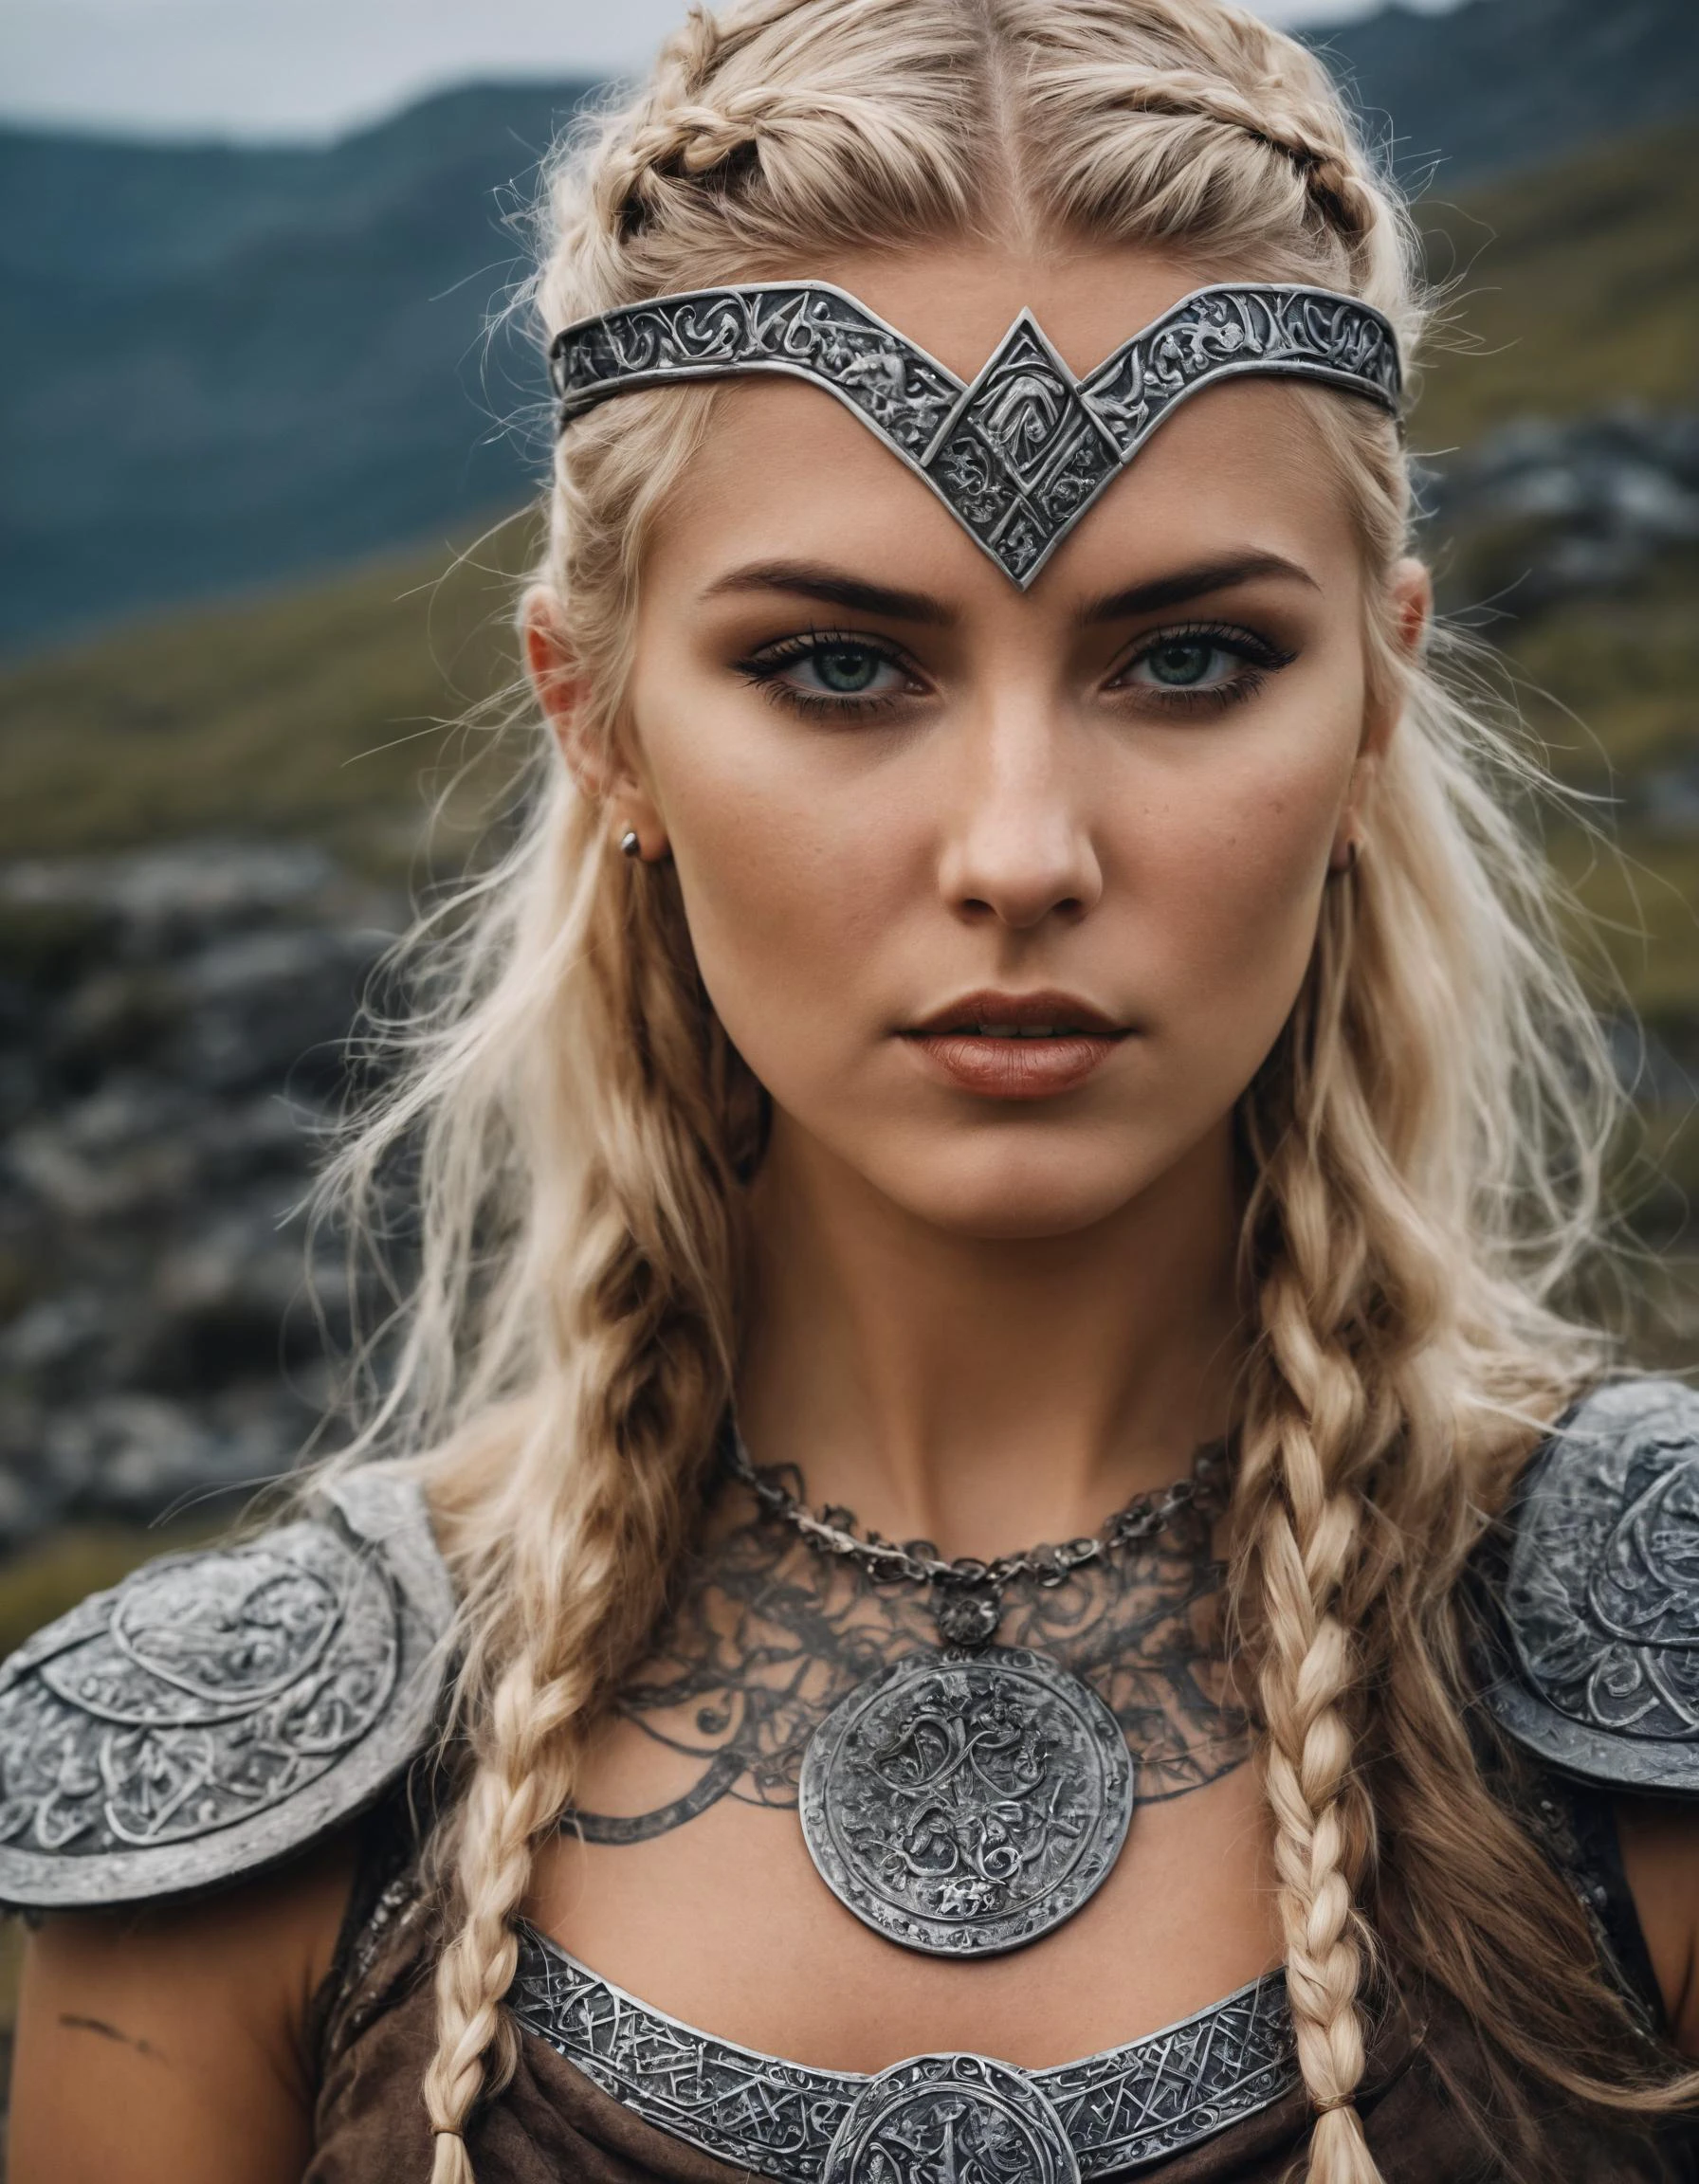 Jeune fille guerrière viking, Runes sombres, Guerrier du Nord, terre dure, beau visage!, runes, femme harpie, sans casque, fort et guerrier, fou furieux, valkyrie, VIKINGS 